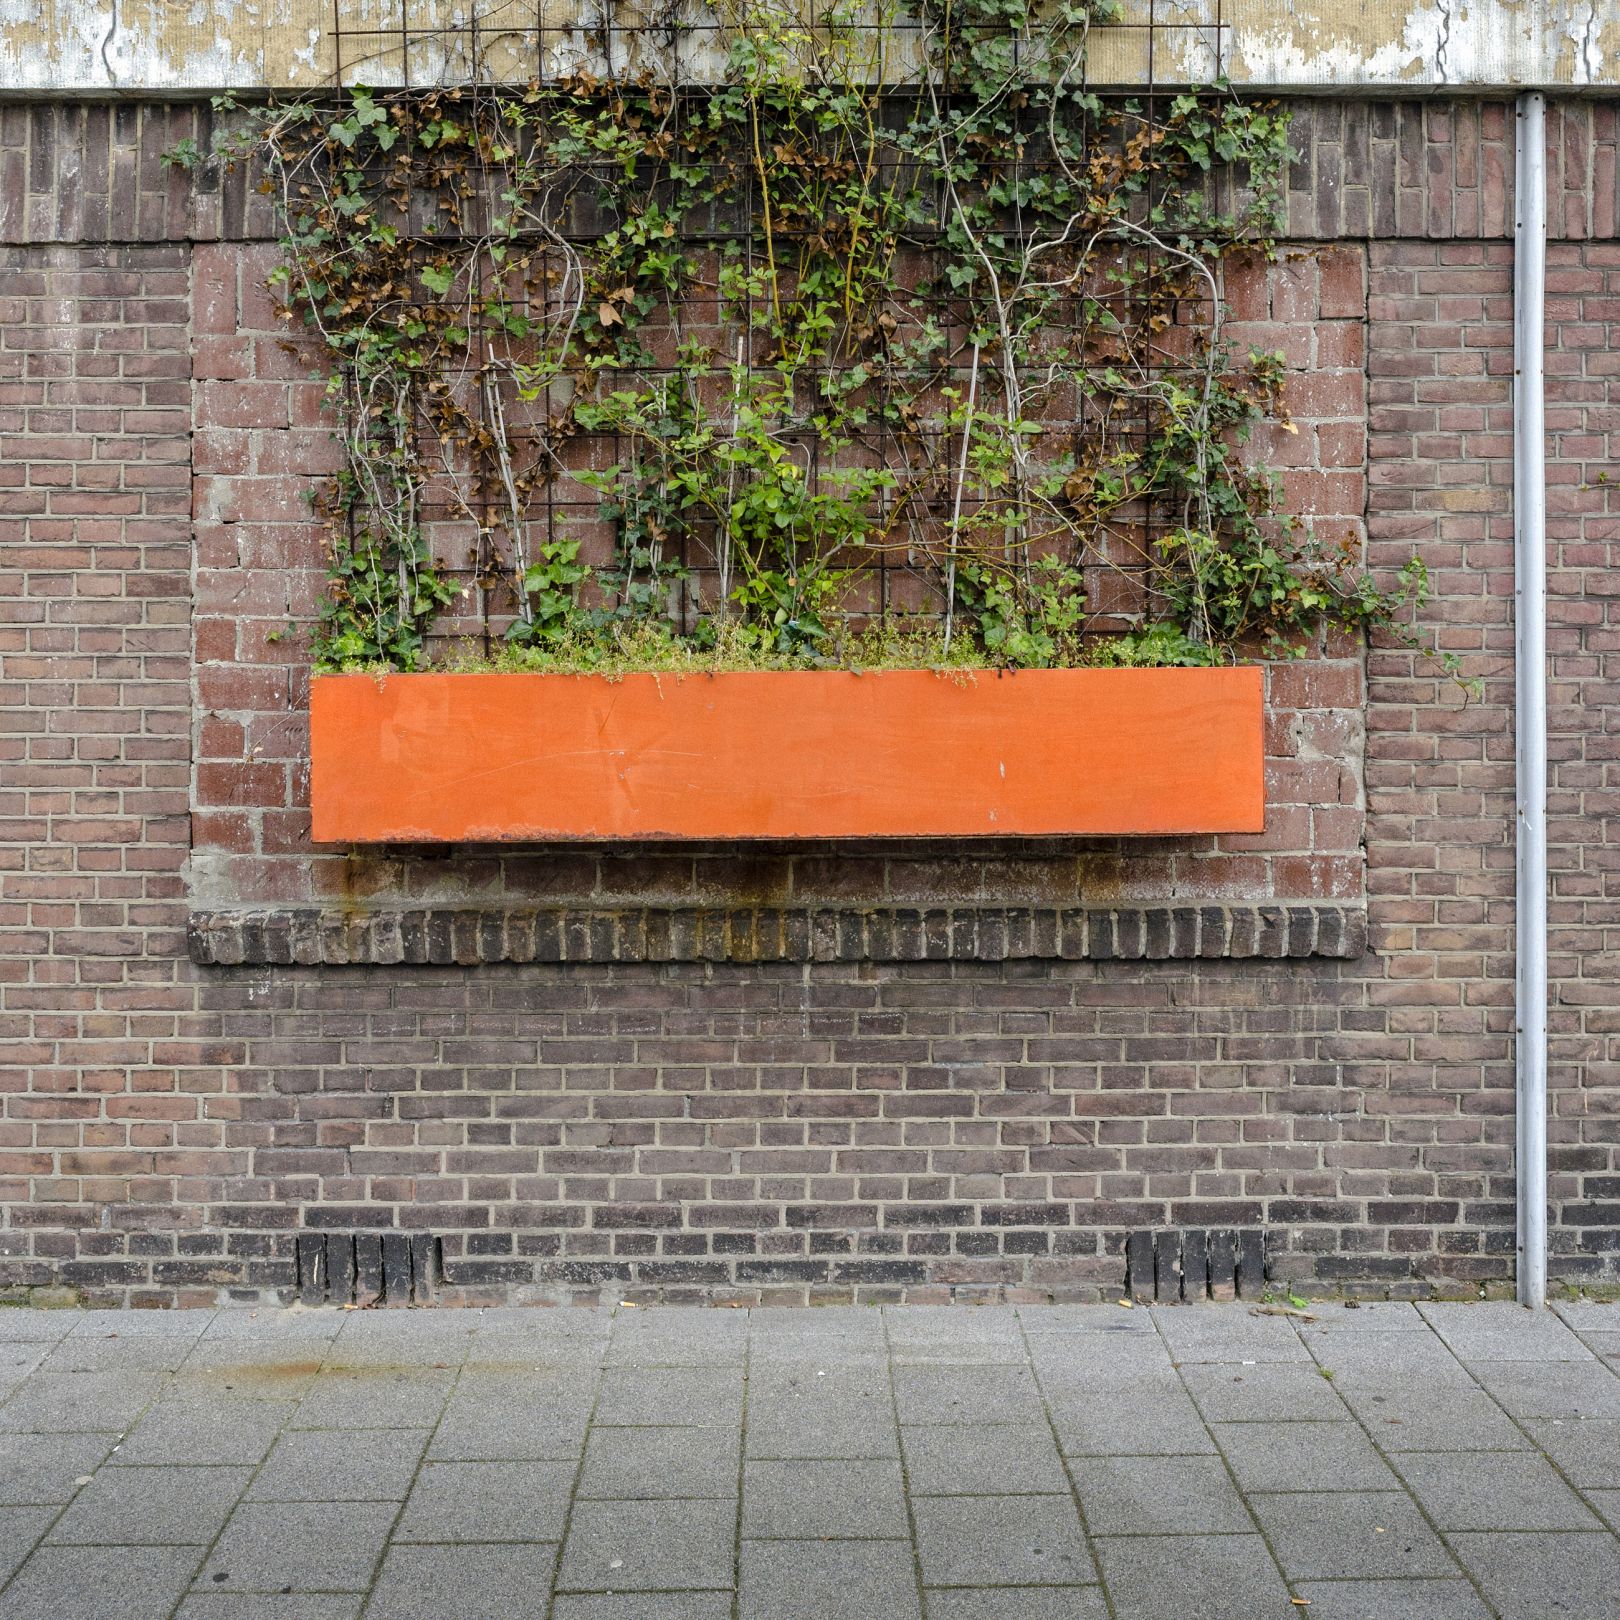 Абстрактные фотографии стен Маартена Вроманса (Maarten Vromans) запечатлели, как люди и природа влияют на городскую среду